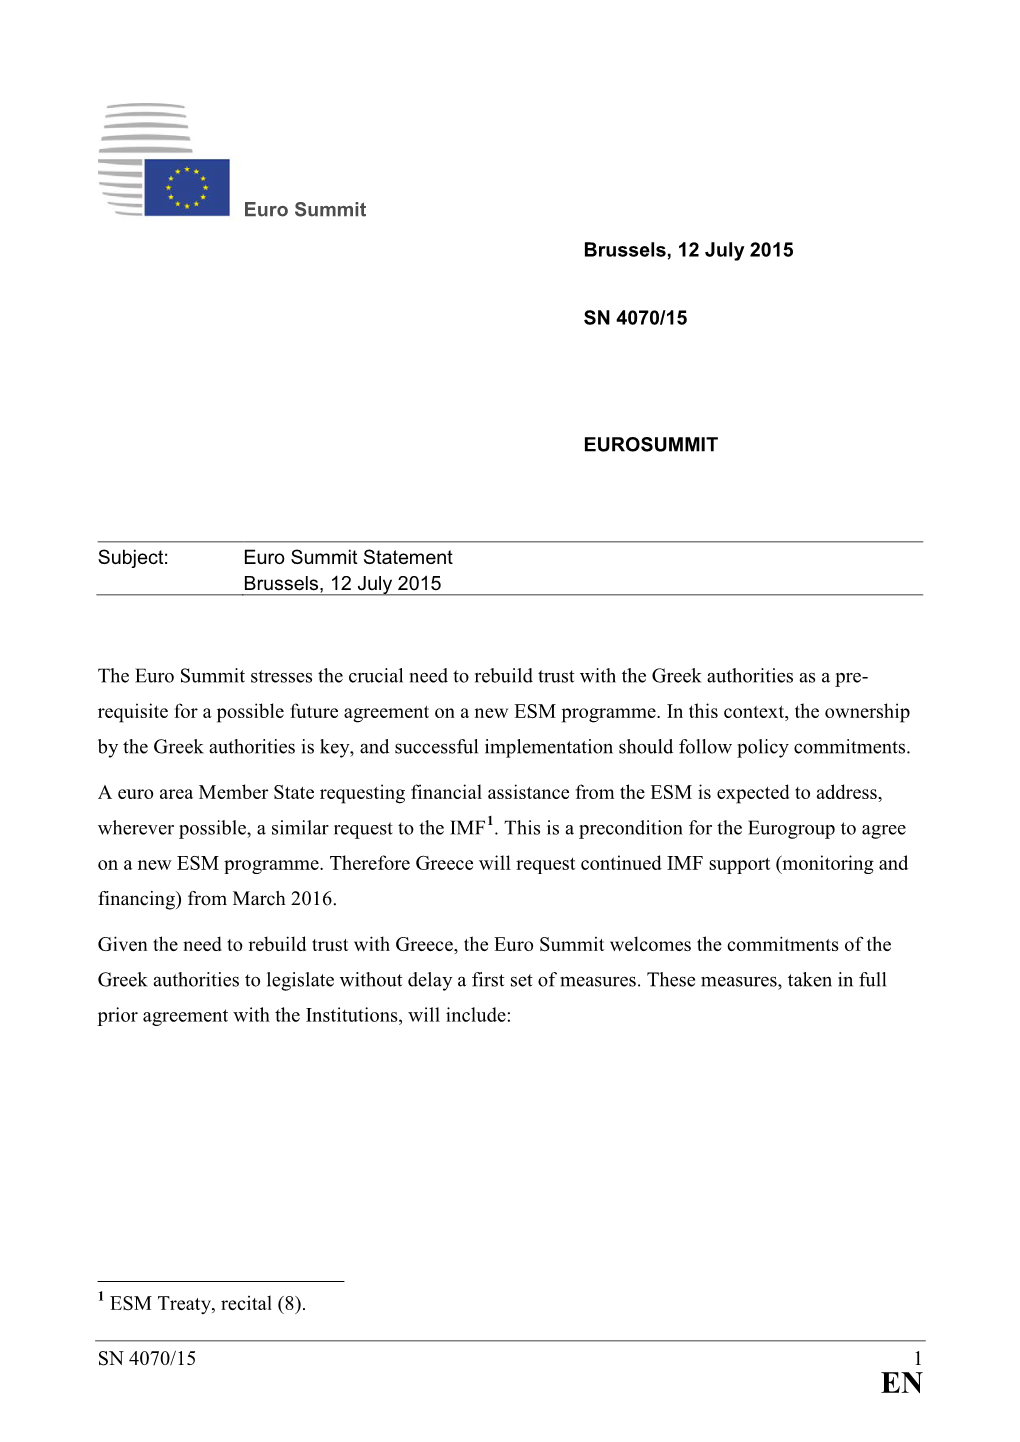 Euro Summit Statement Brussels, 12 July 2015